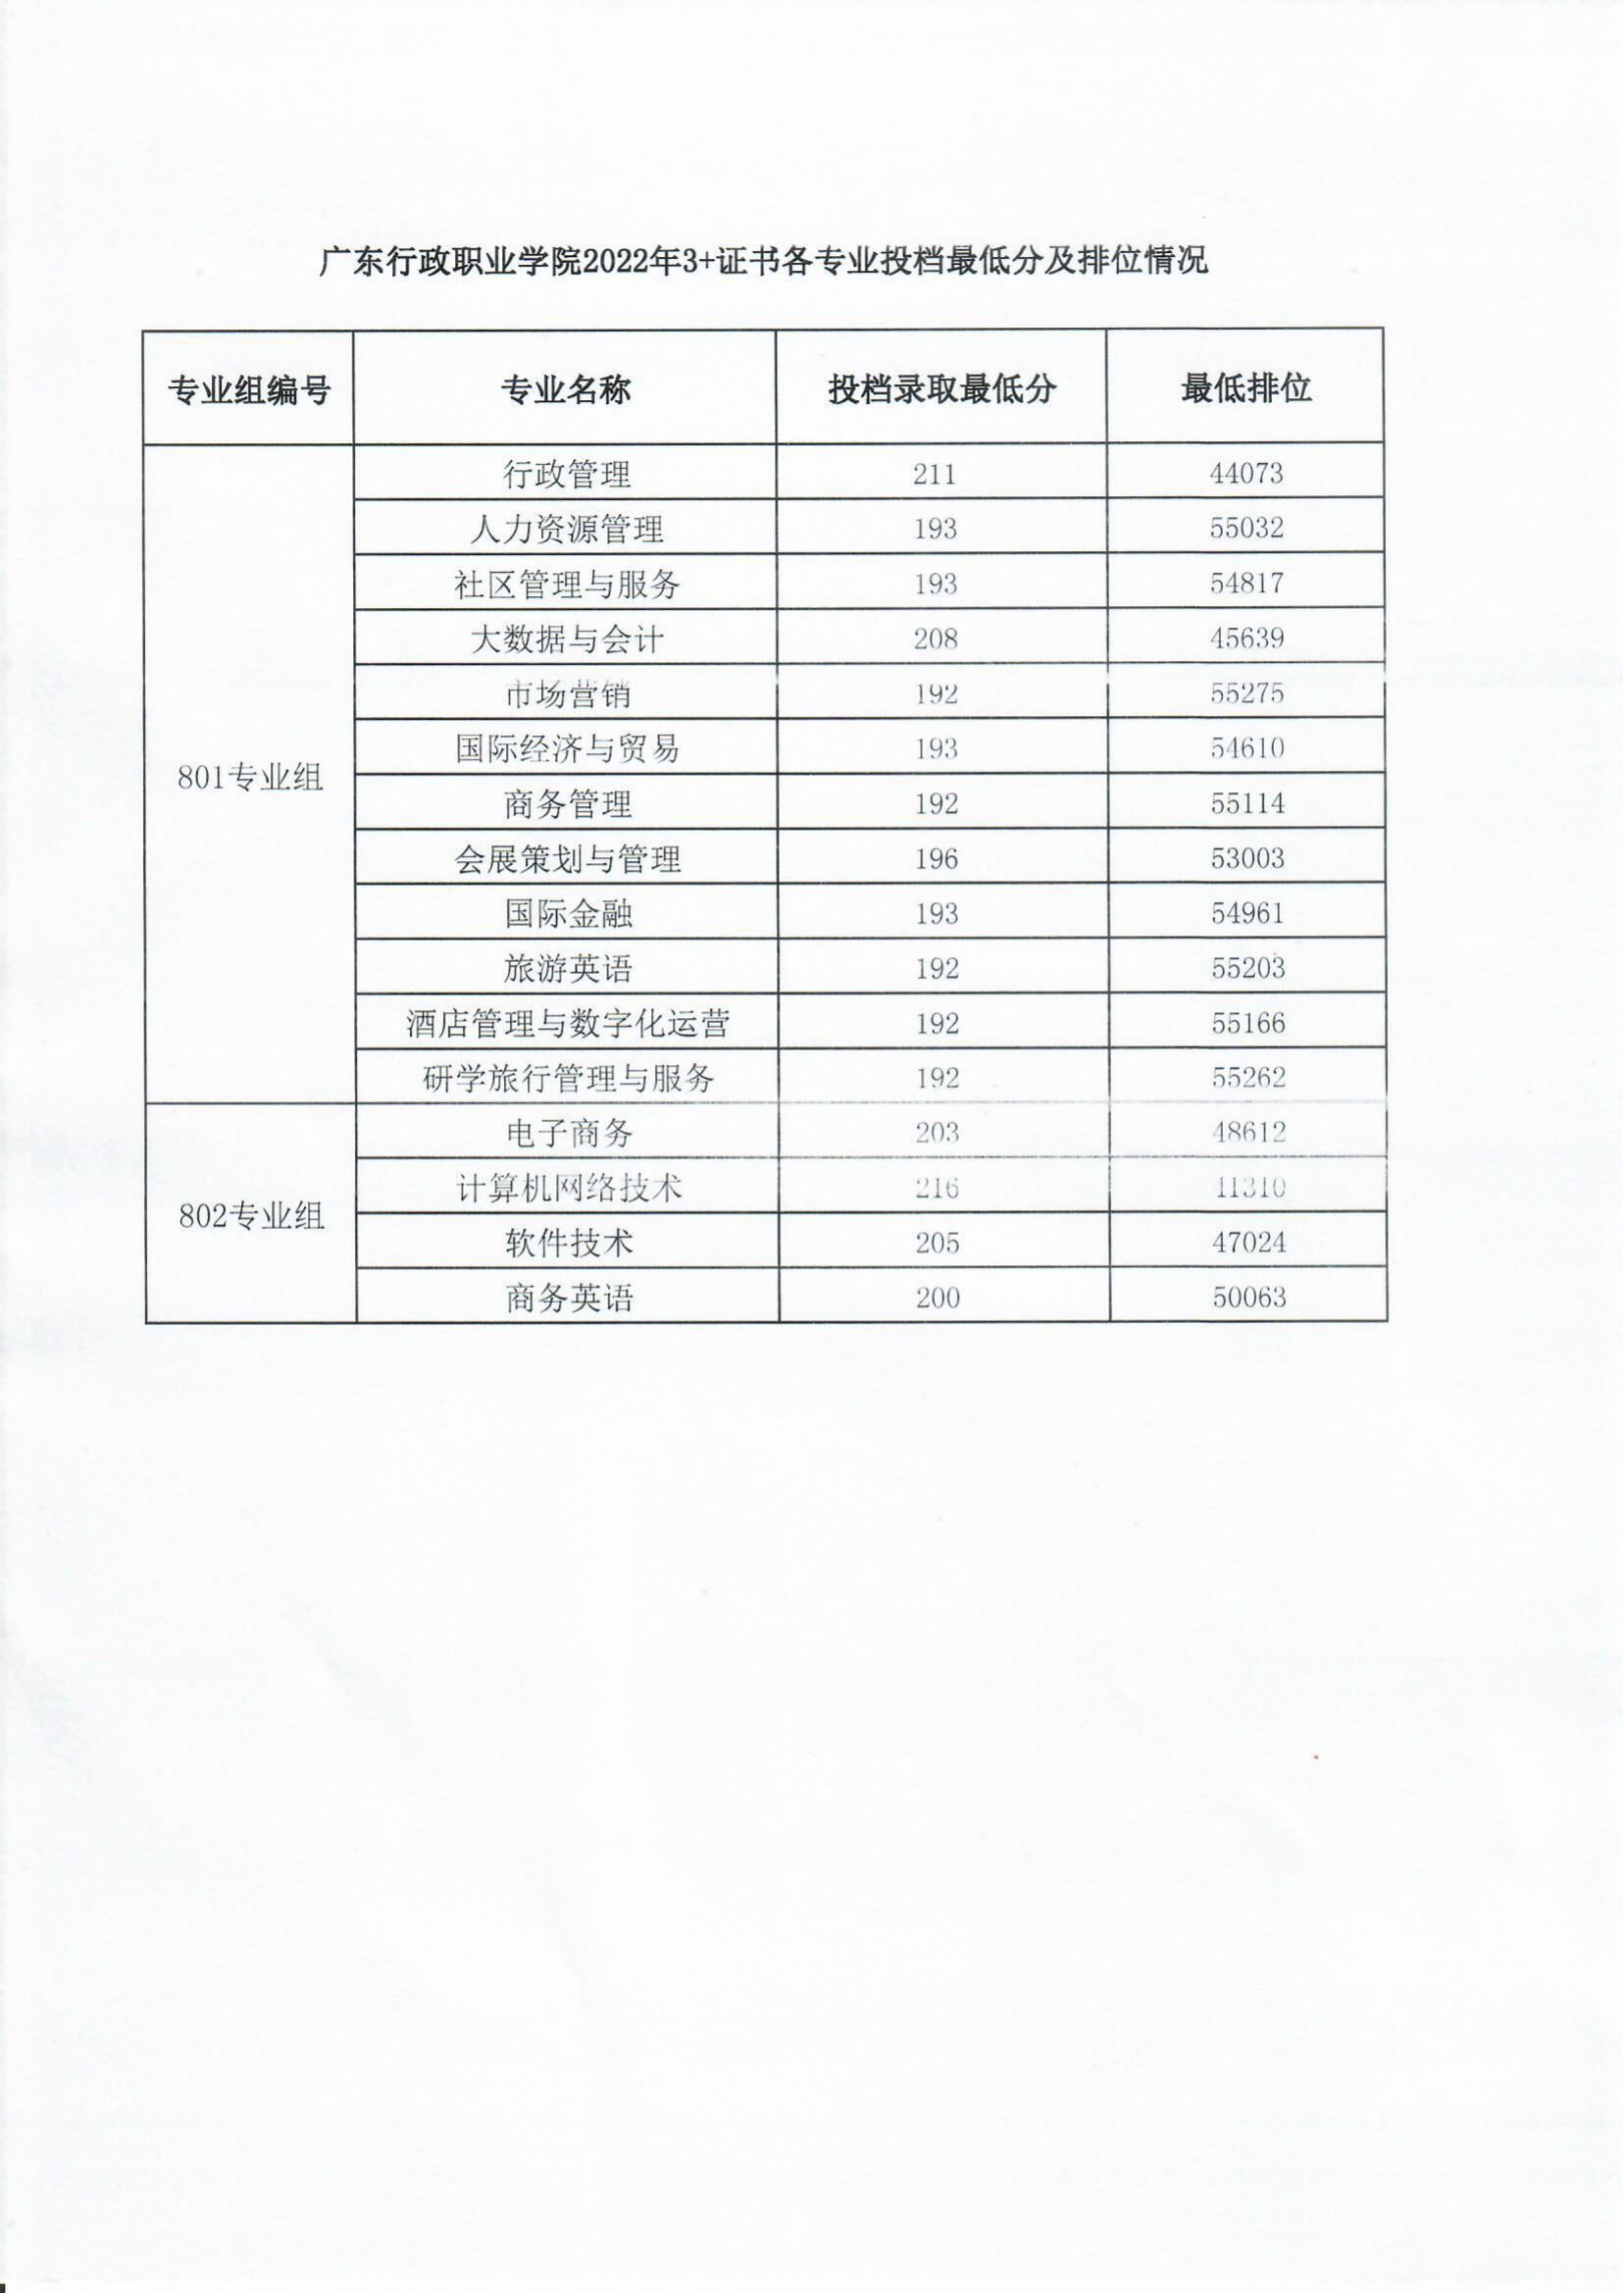 广东行政职业学院2022年“3+证书类”招考各专业投档最低分及排位情况